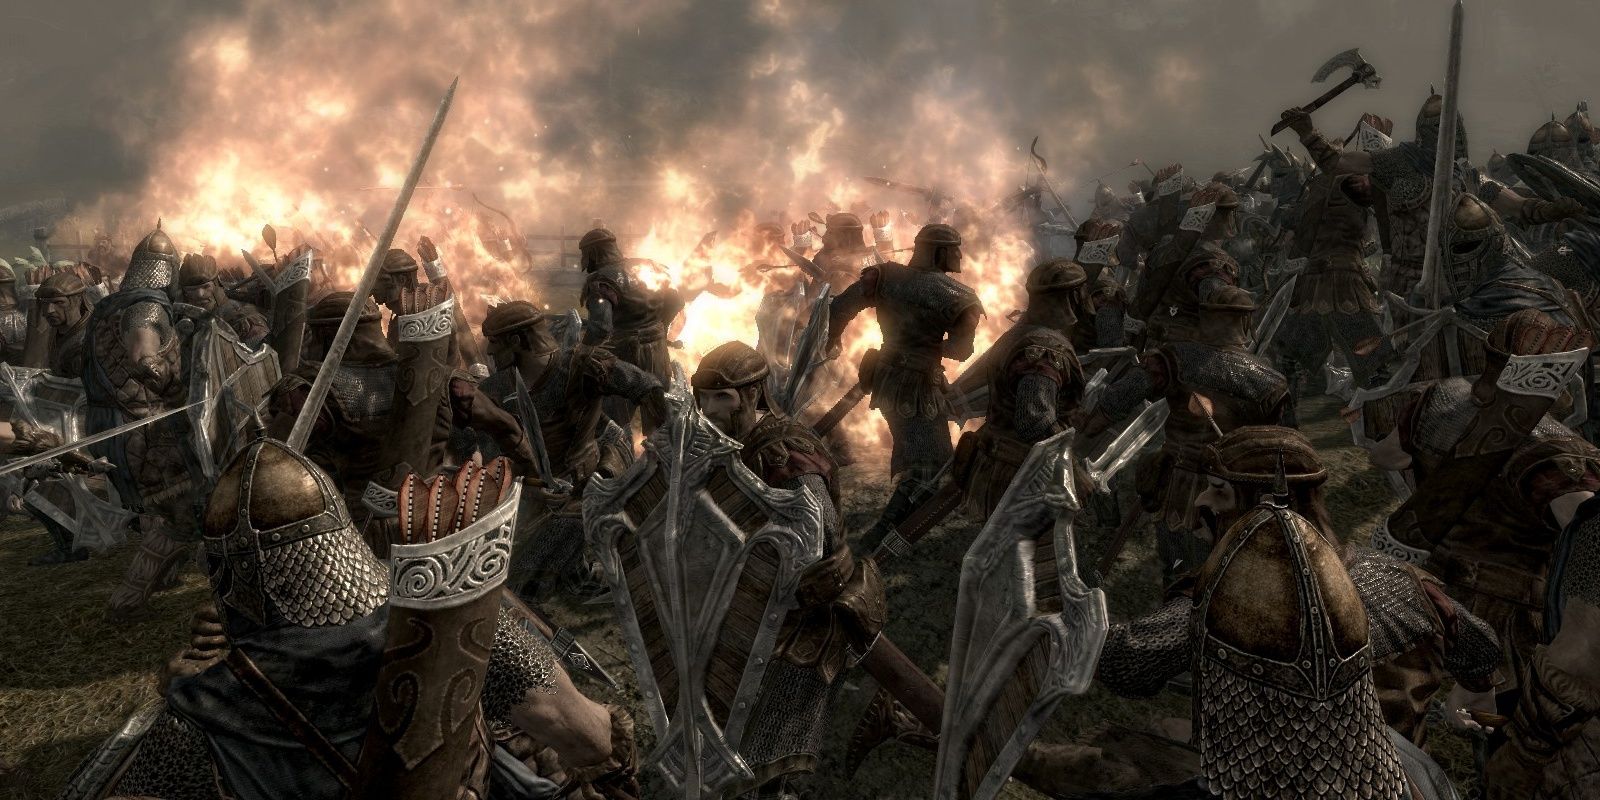 The Battle of Whiterun From The Elder Scrolls V Skyrim